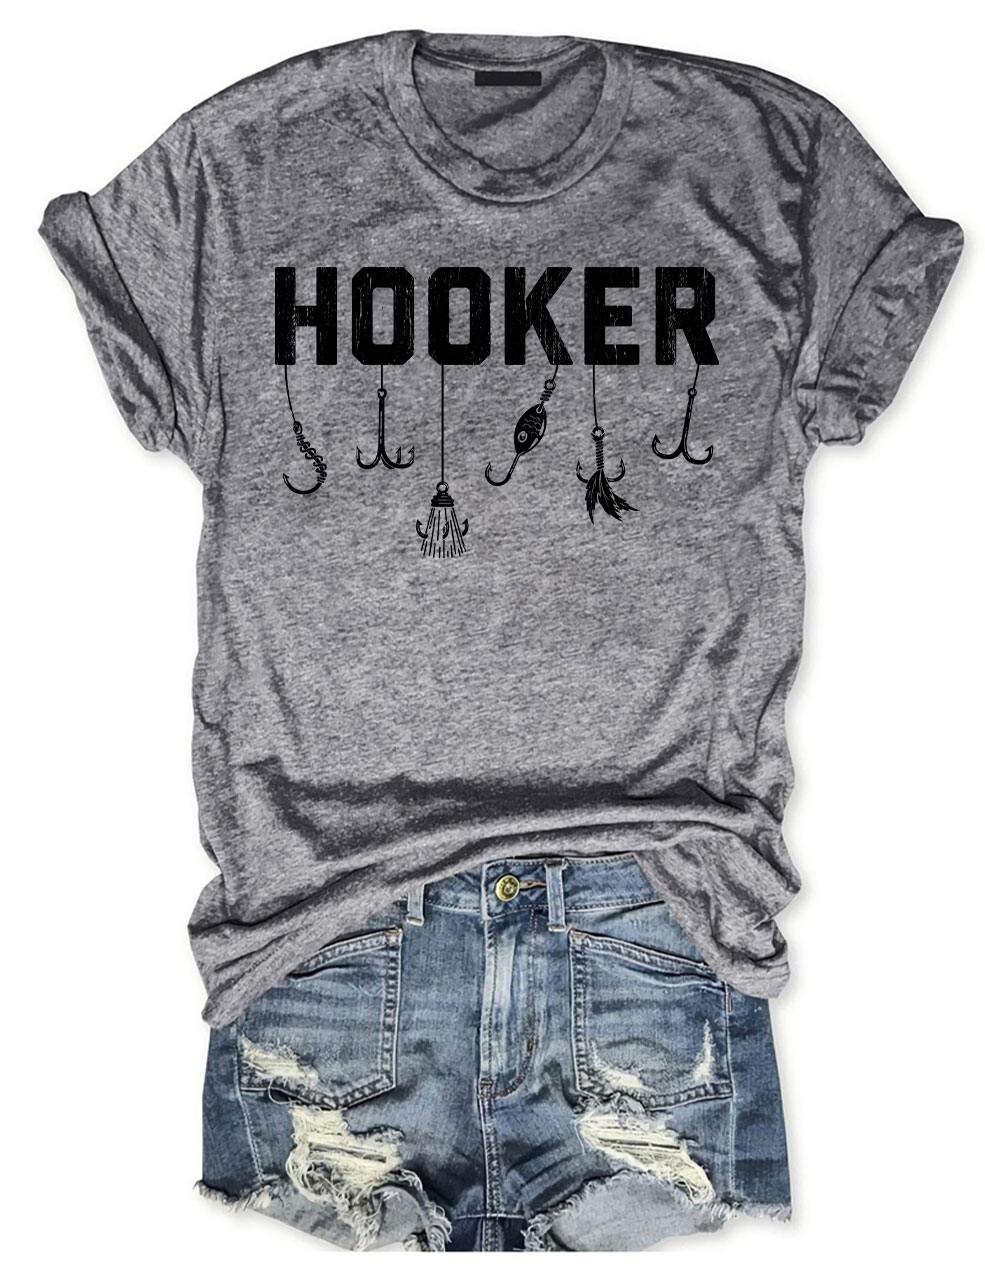 Fishing Gear Hooker T-shirt